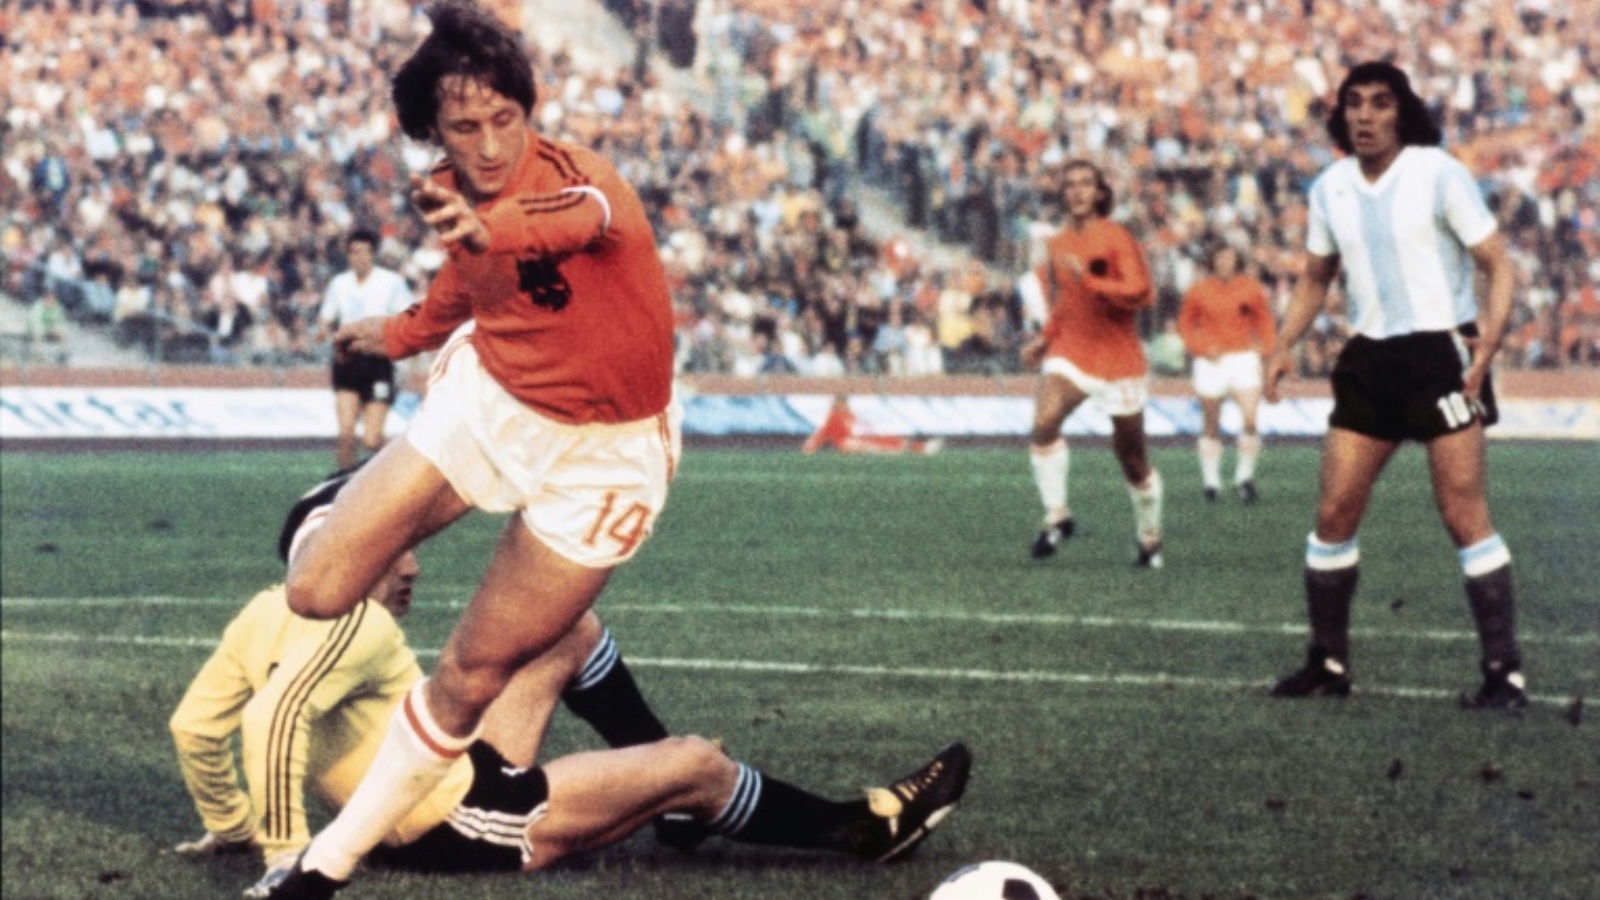 الهولندي يوهان كرويف يراوغ حارس الأرجنتين دانيال كارنيفالي ويسجل في الدور الثاني من مونديال 1974 في غلزنكيرشن